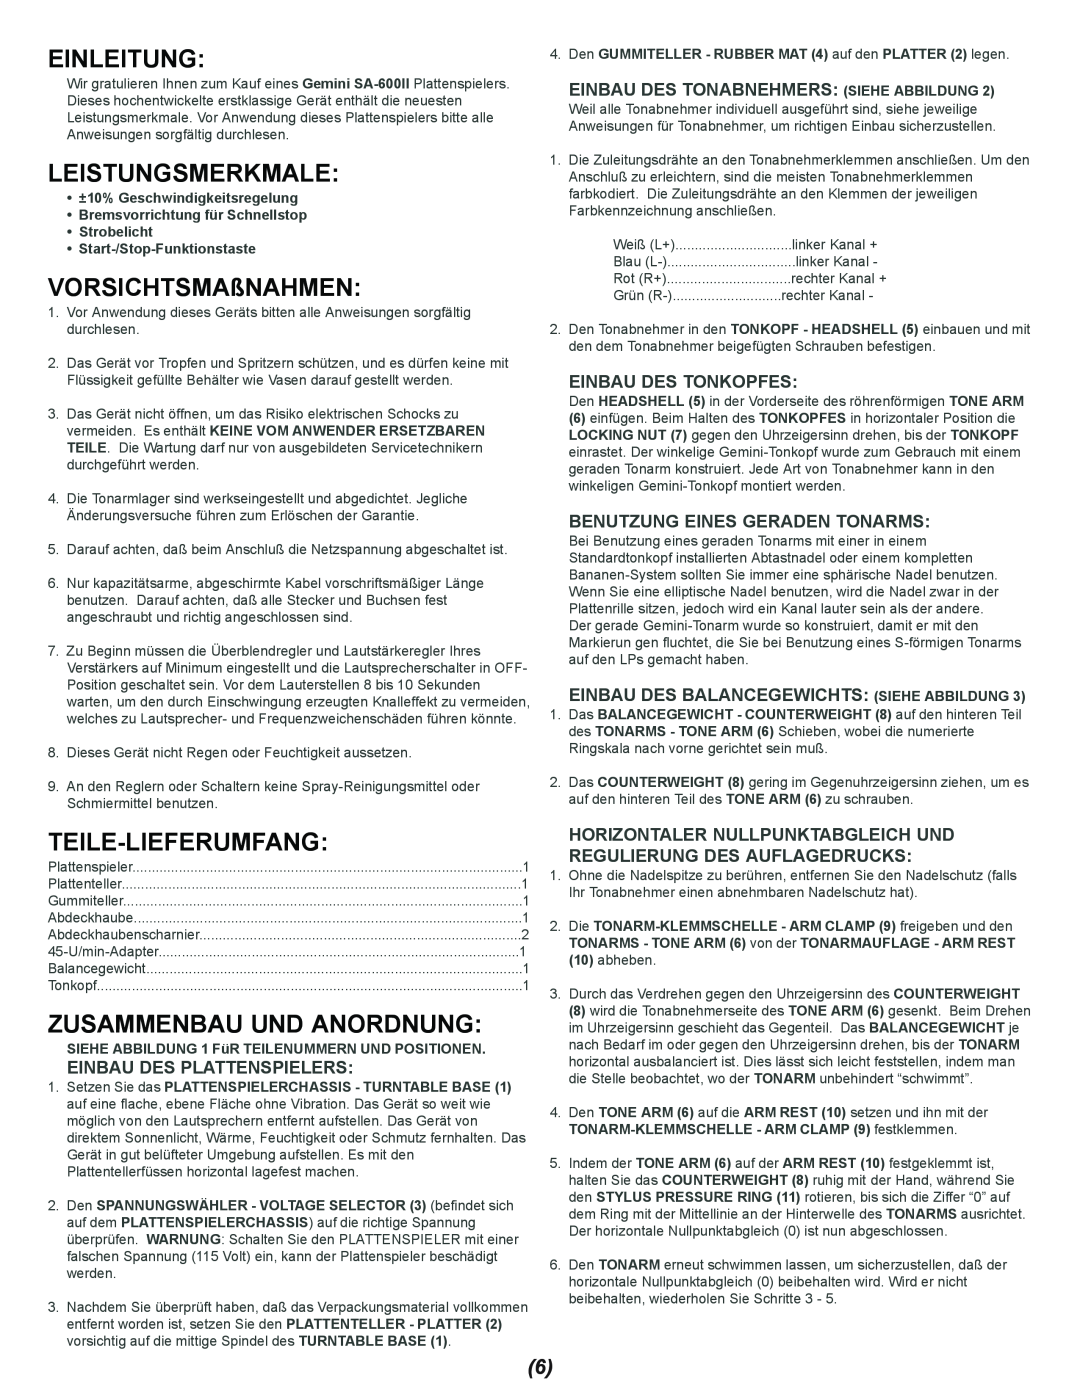 Gemini SA-600II manual Einleitung, Leistungsmerkmale, VORSICHTSMAßNAHMEN, Teile-Lieferumfang, Zusammenbau Und Anordnung 